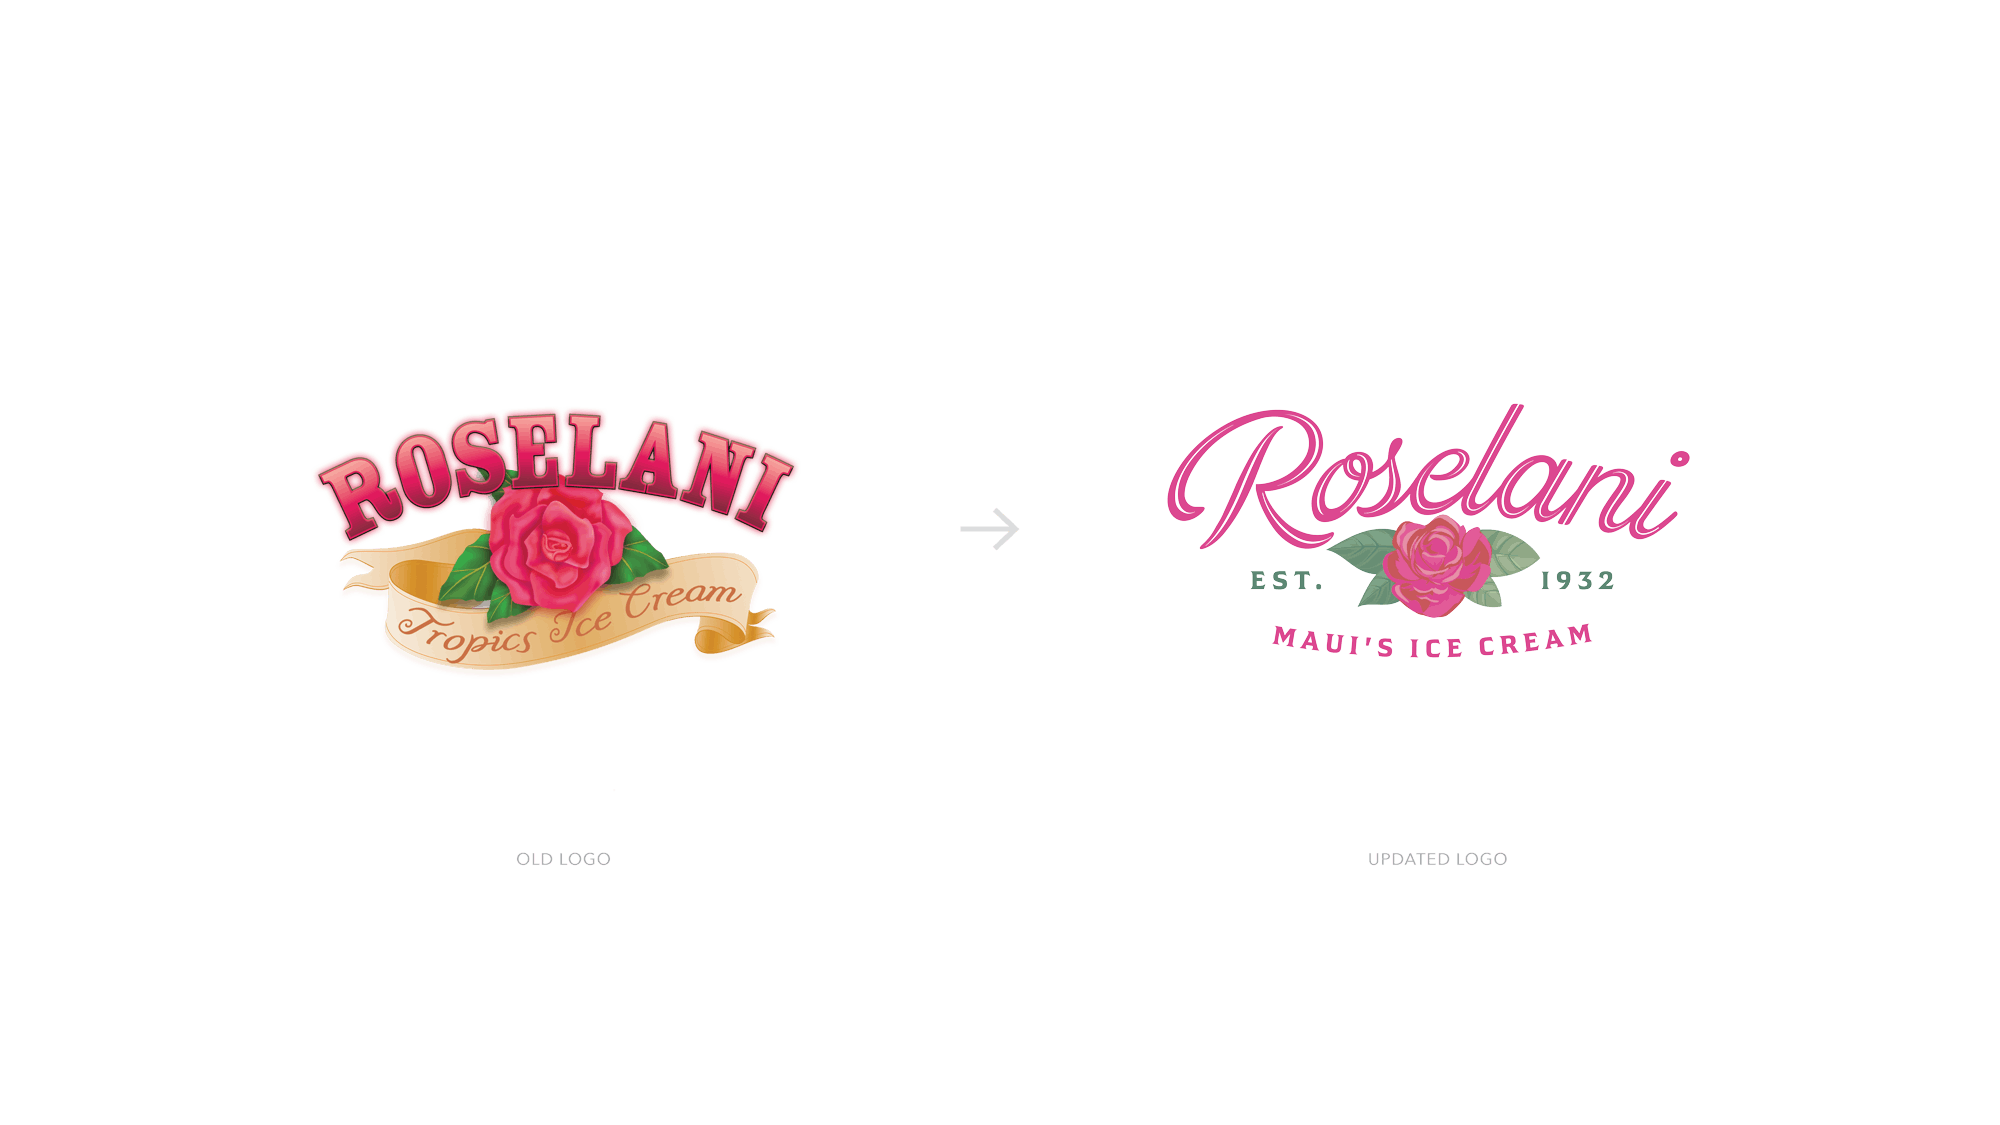 Roselani logo redesign